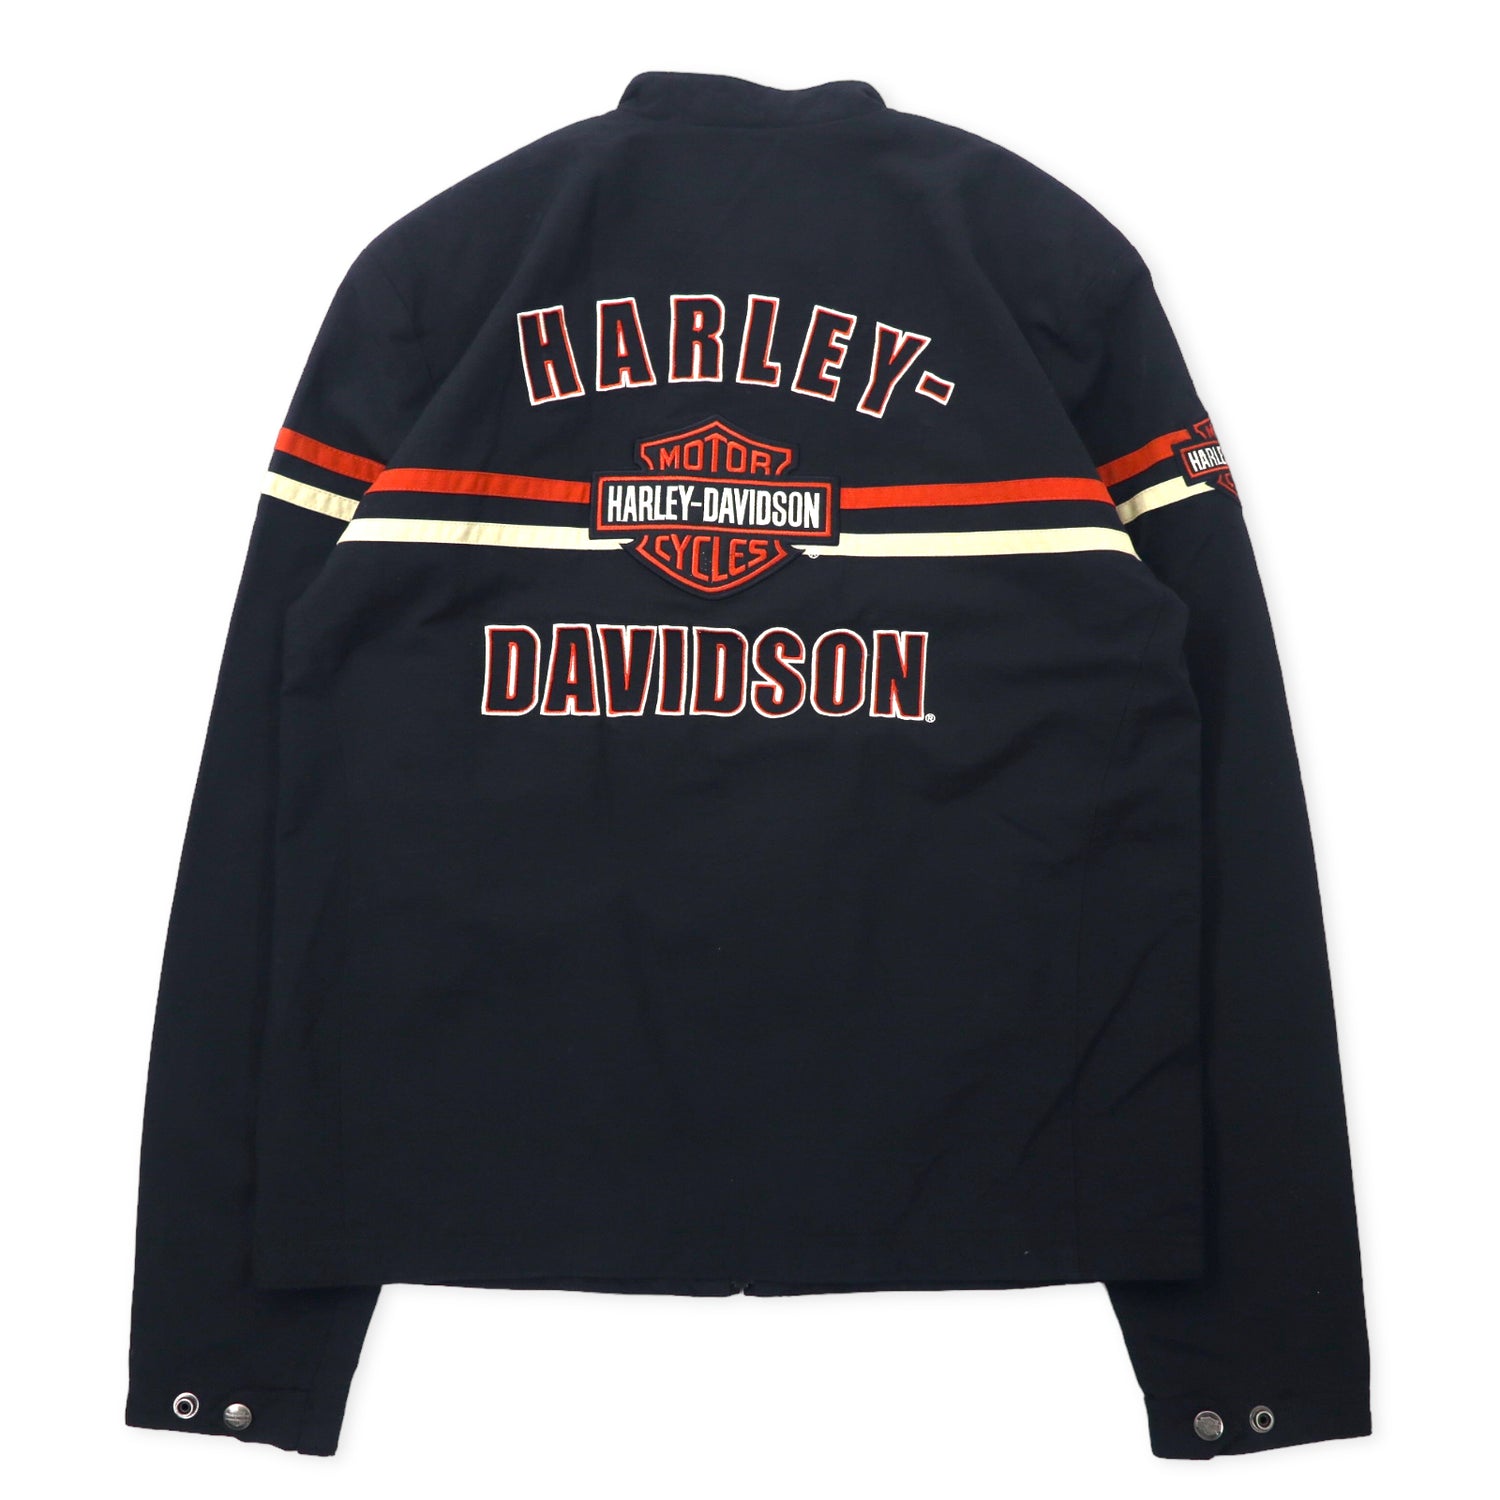 HARLEY DAVIDSON シングル ライダースジャケット S ブラック ナイロン